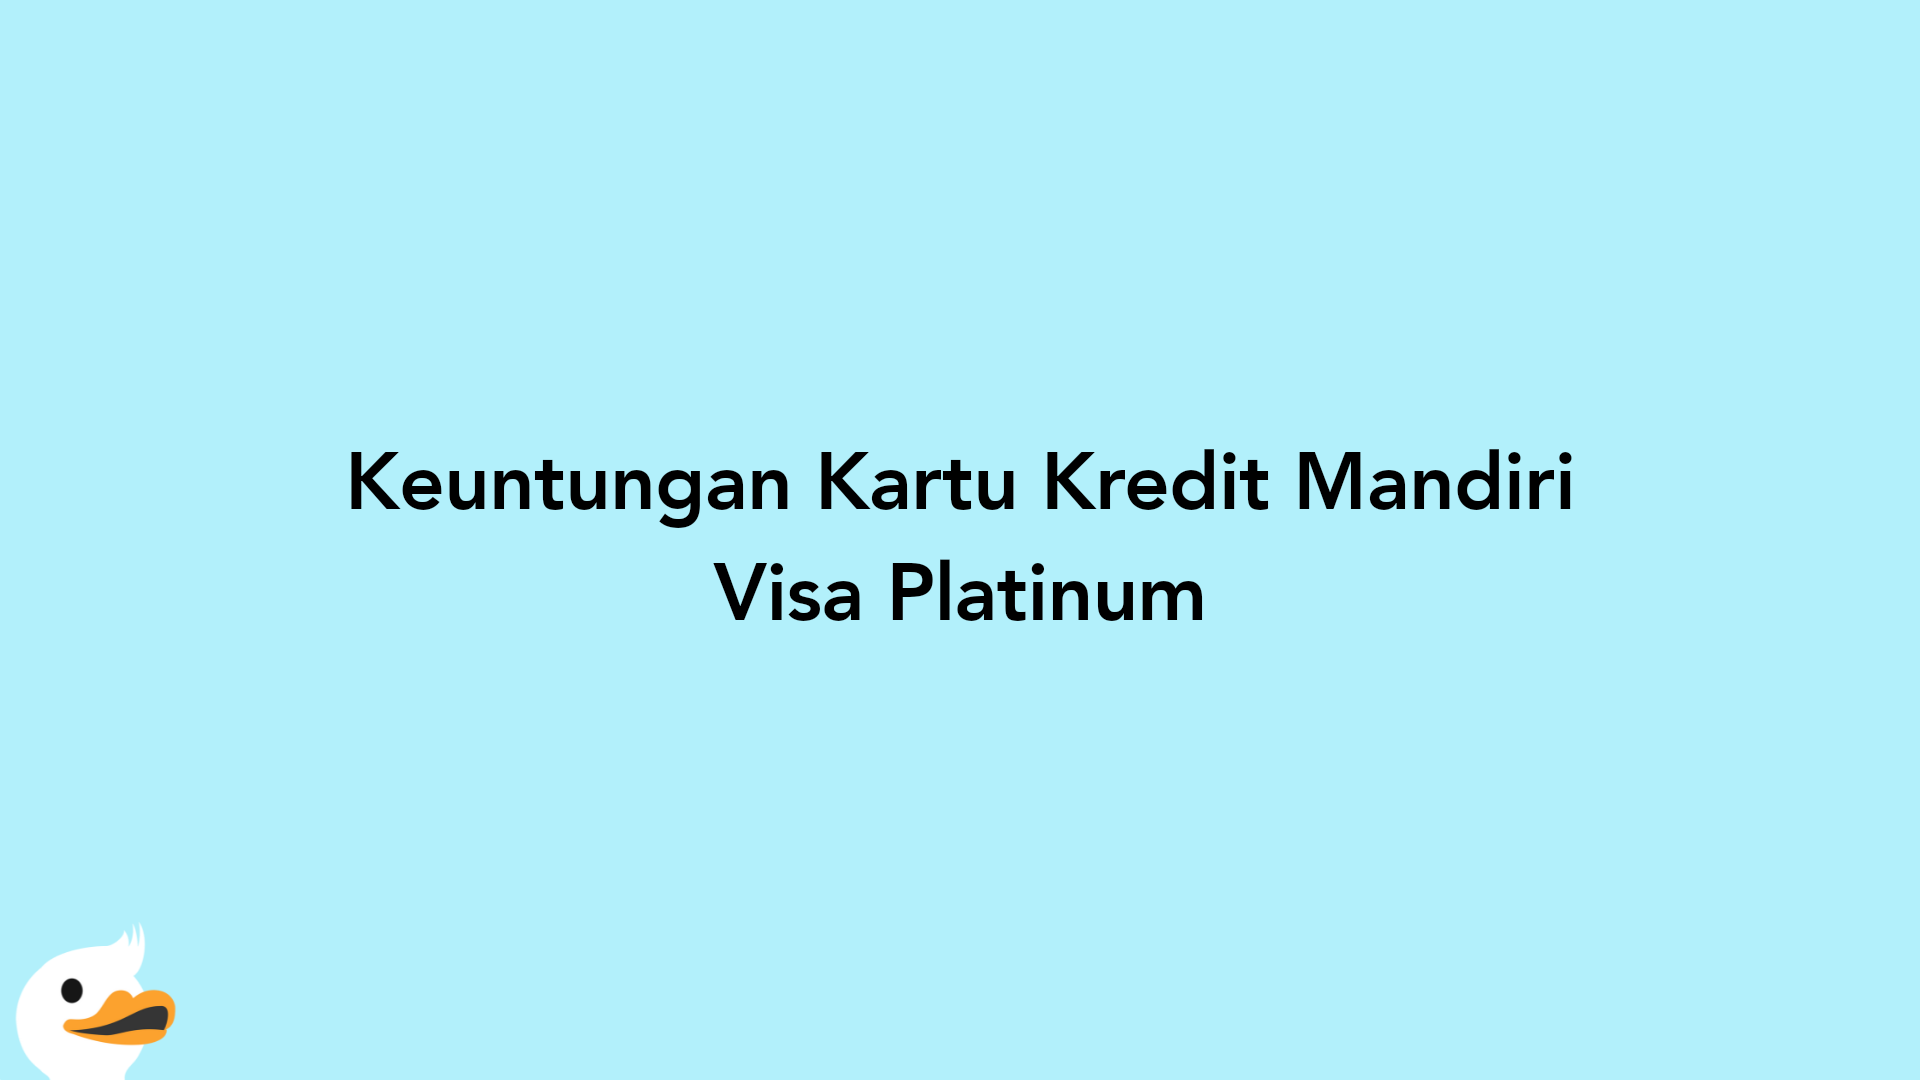 Keuntungan Kartu Kredit Mandiri Visa Platinum